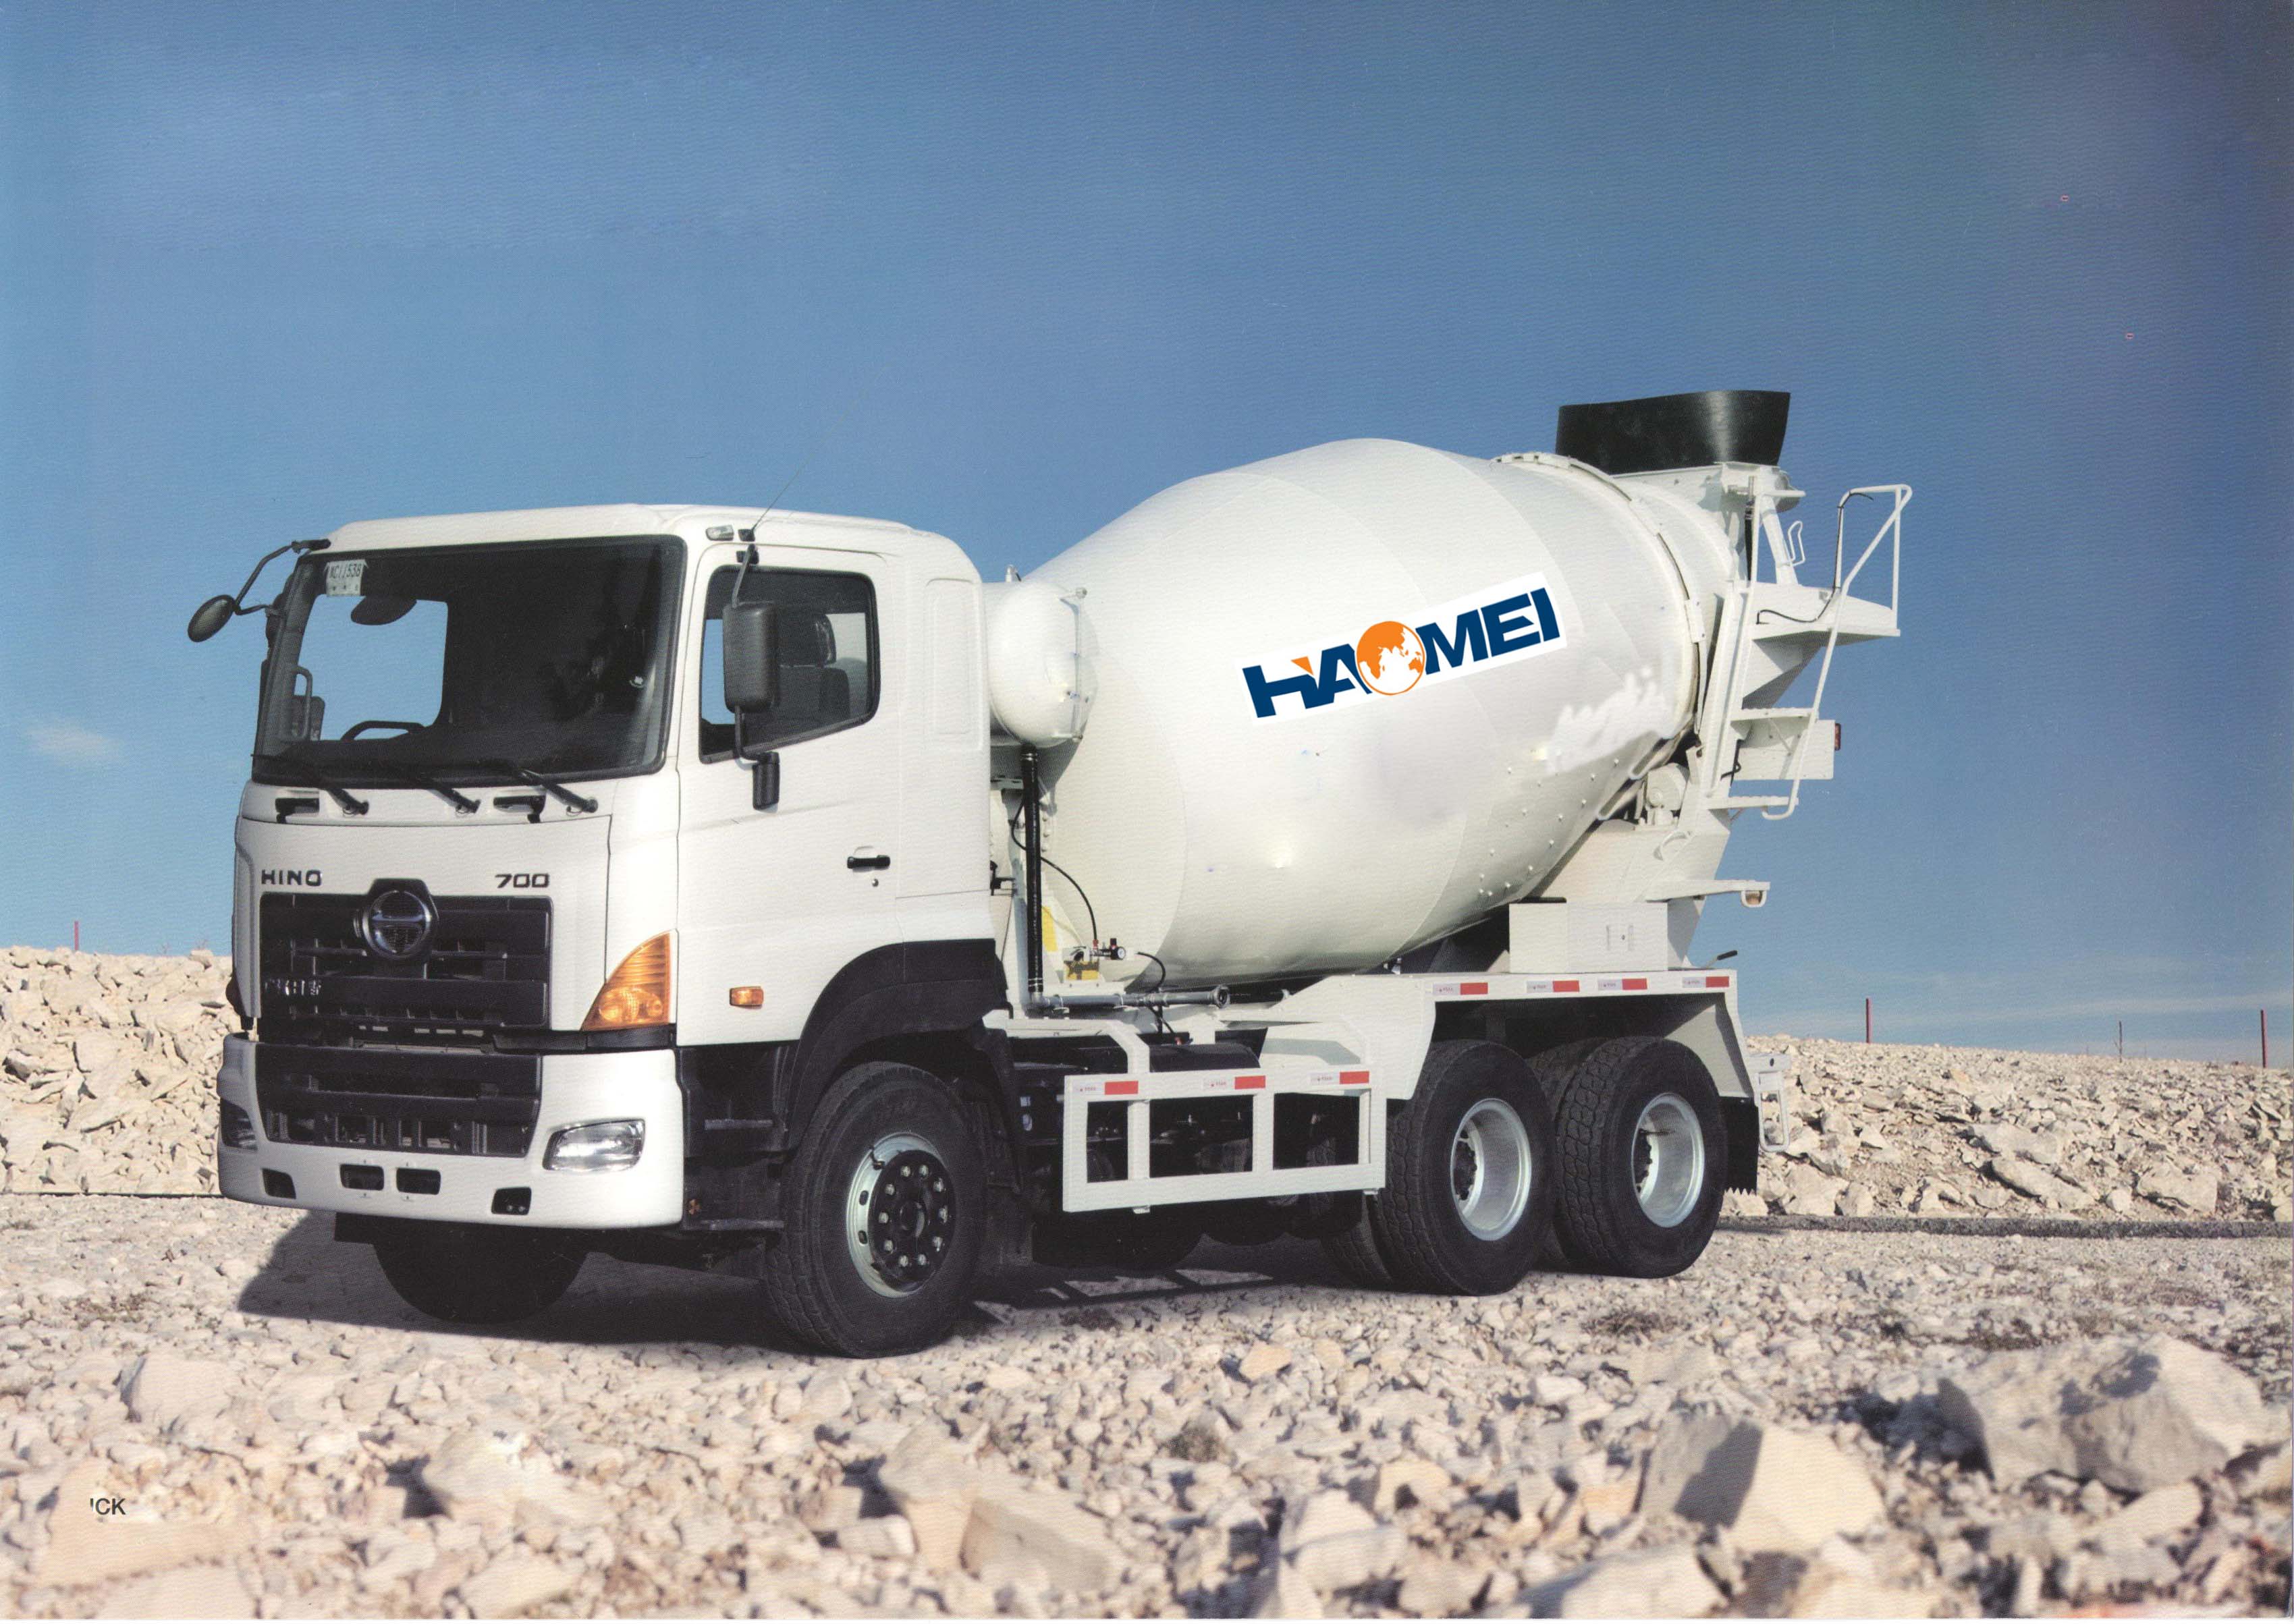 HM6-D cement mixer truck